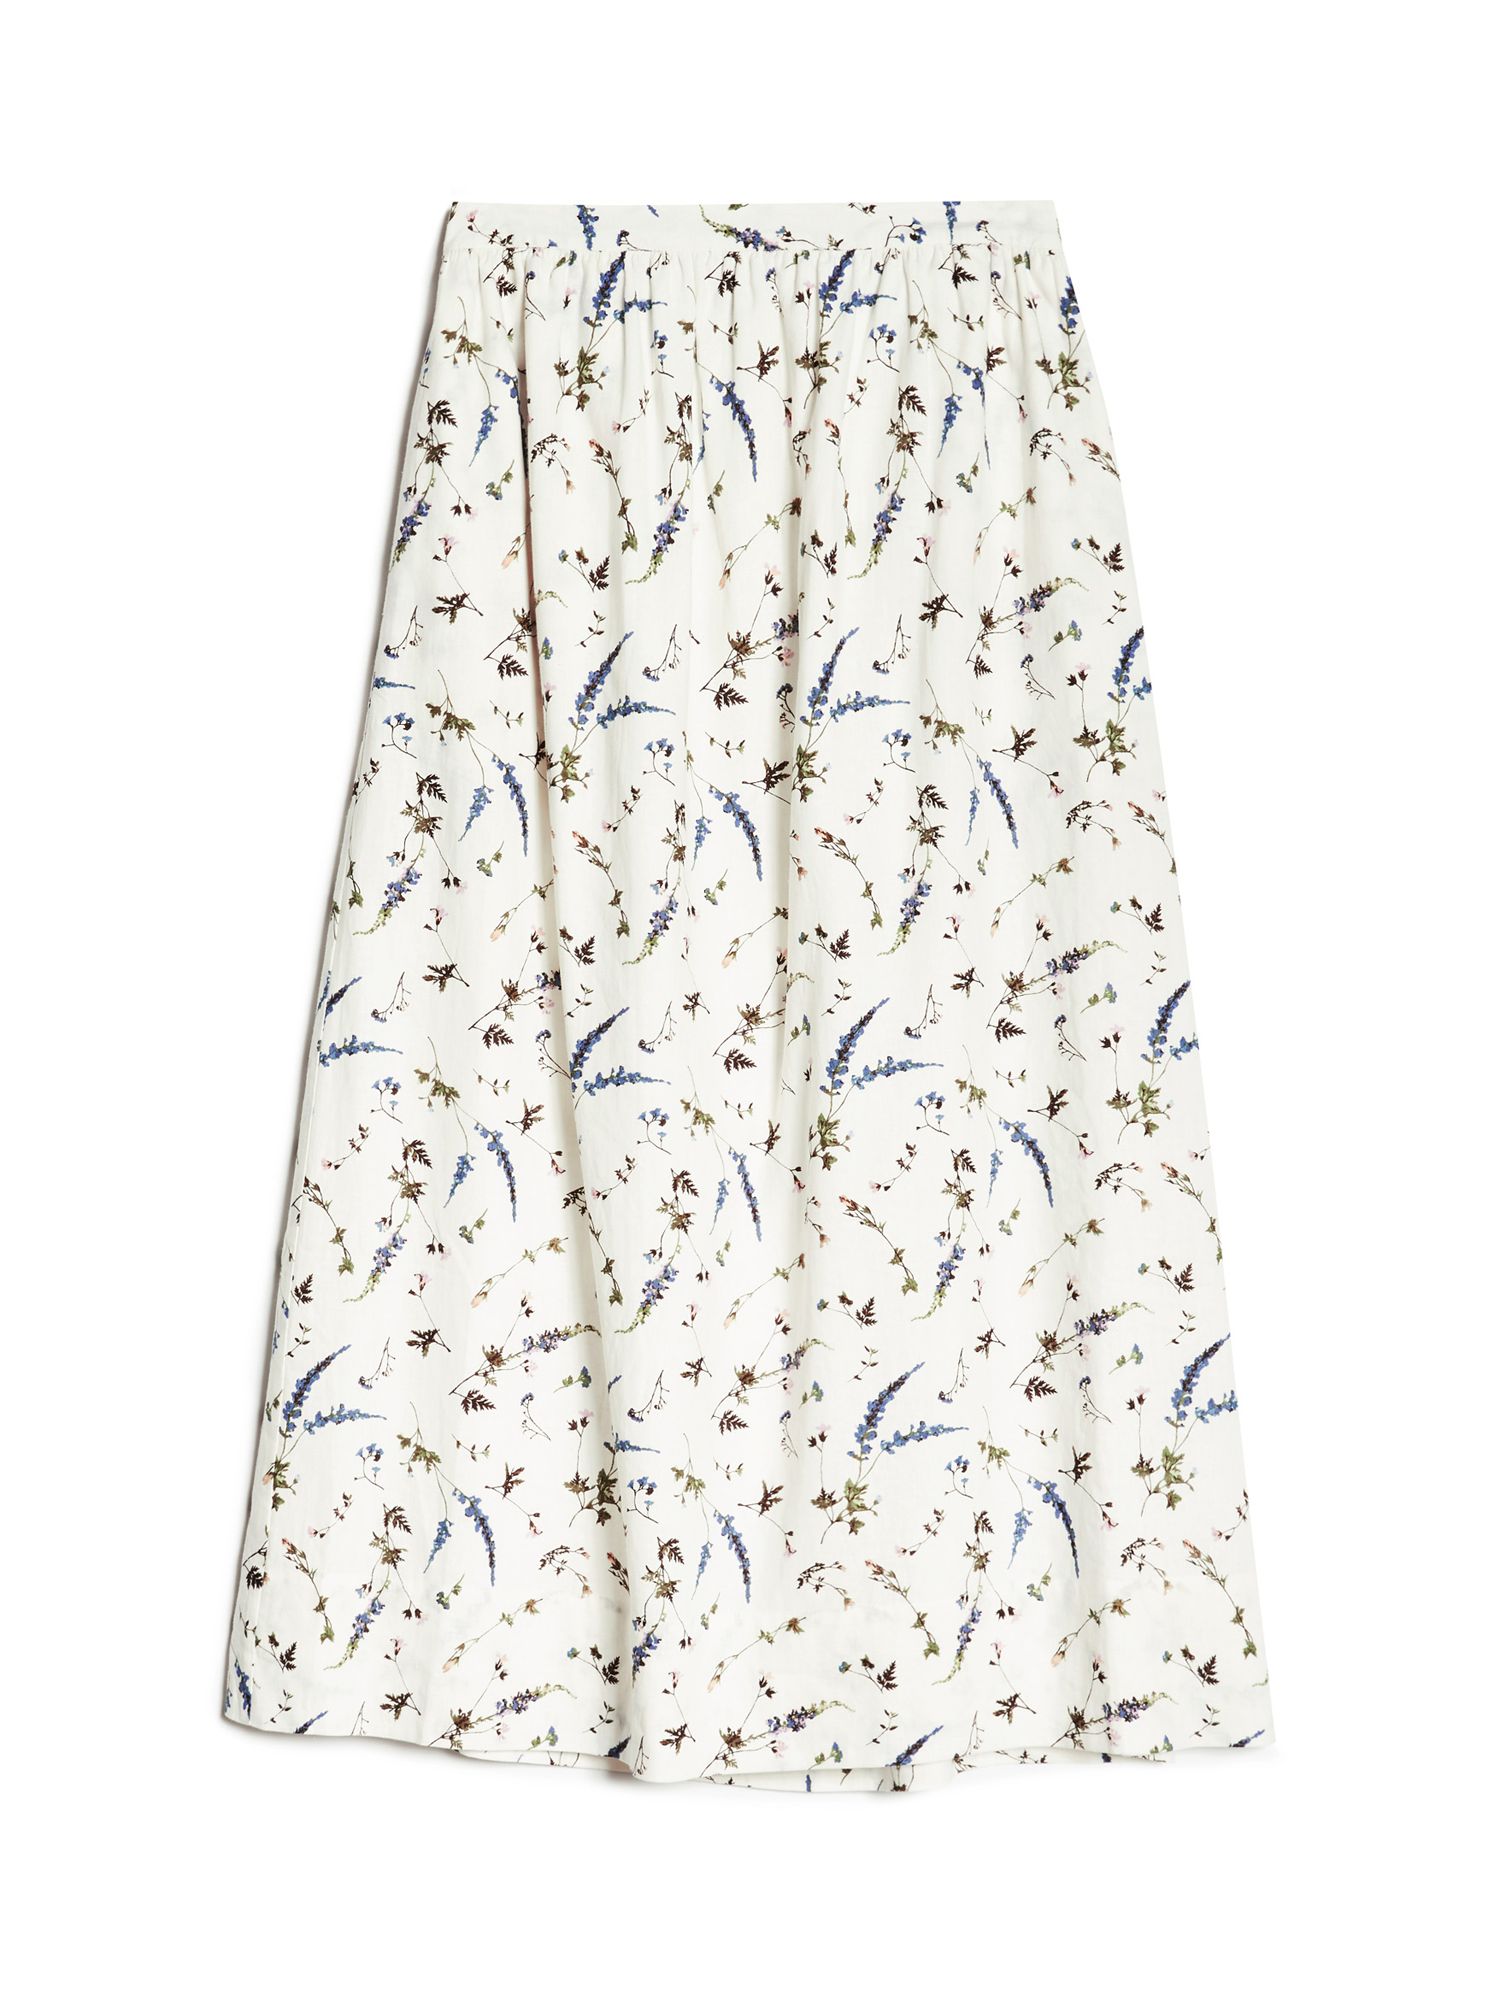 Albaray Sprig Floral Skirt, White/Multi, 8